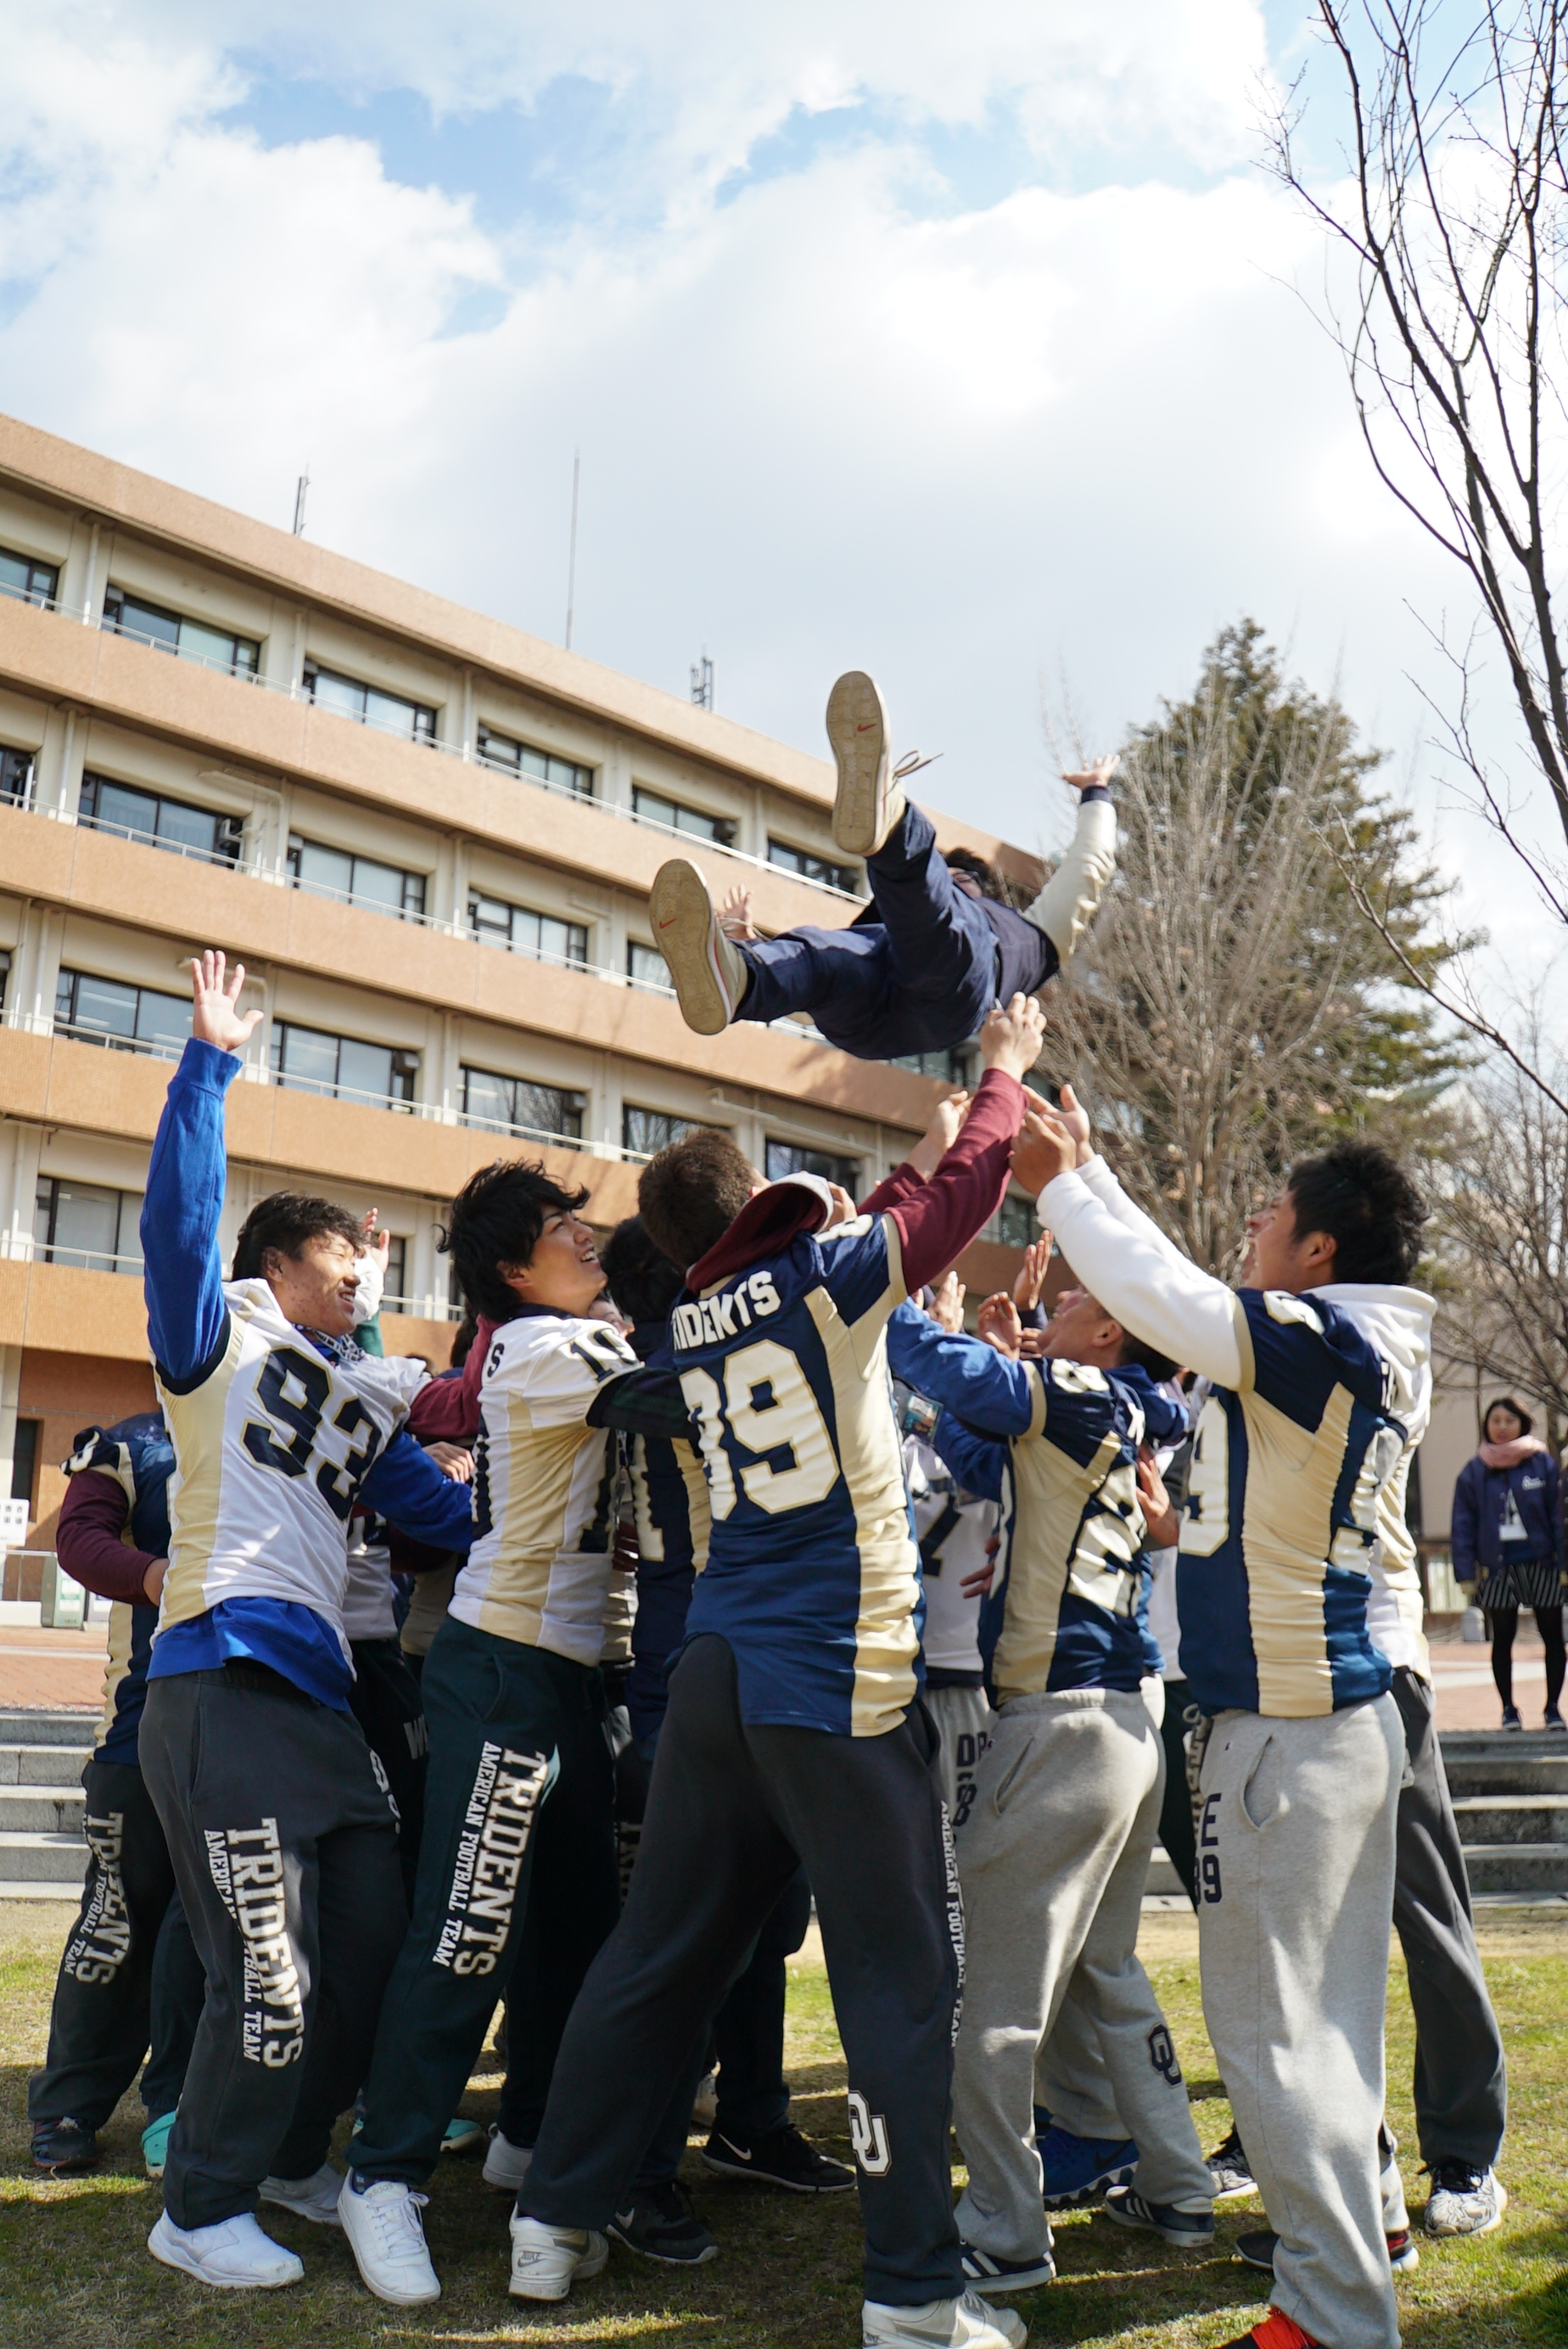 入学者選抜試験の合格者を発表、3,249人に「桜咲く」